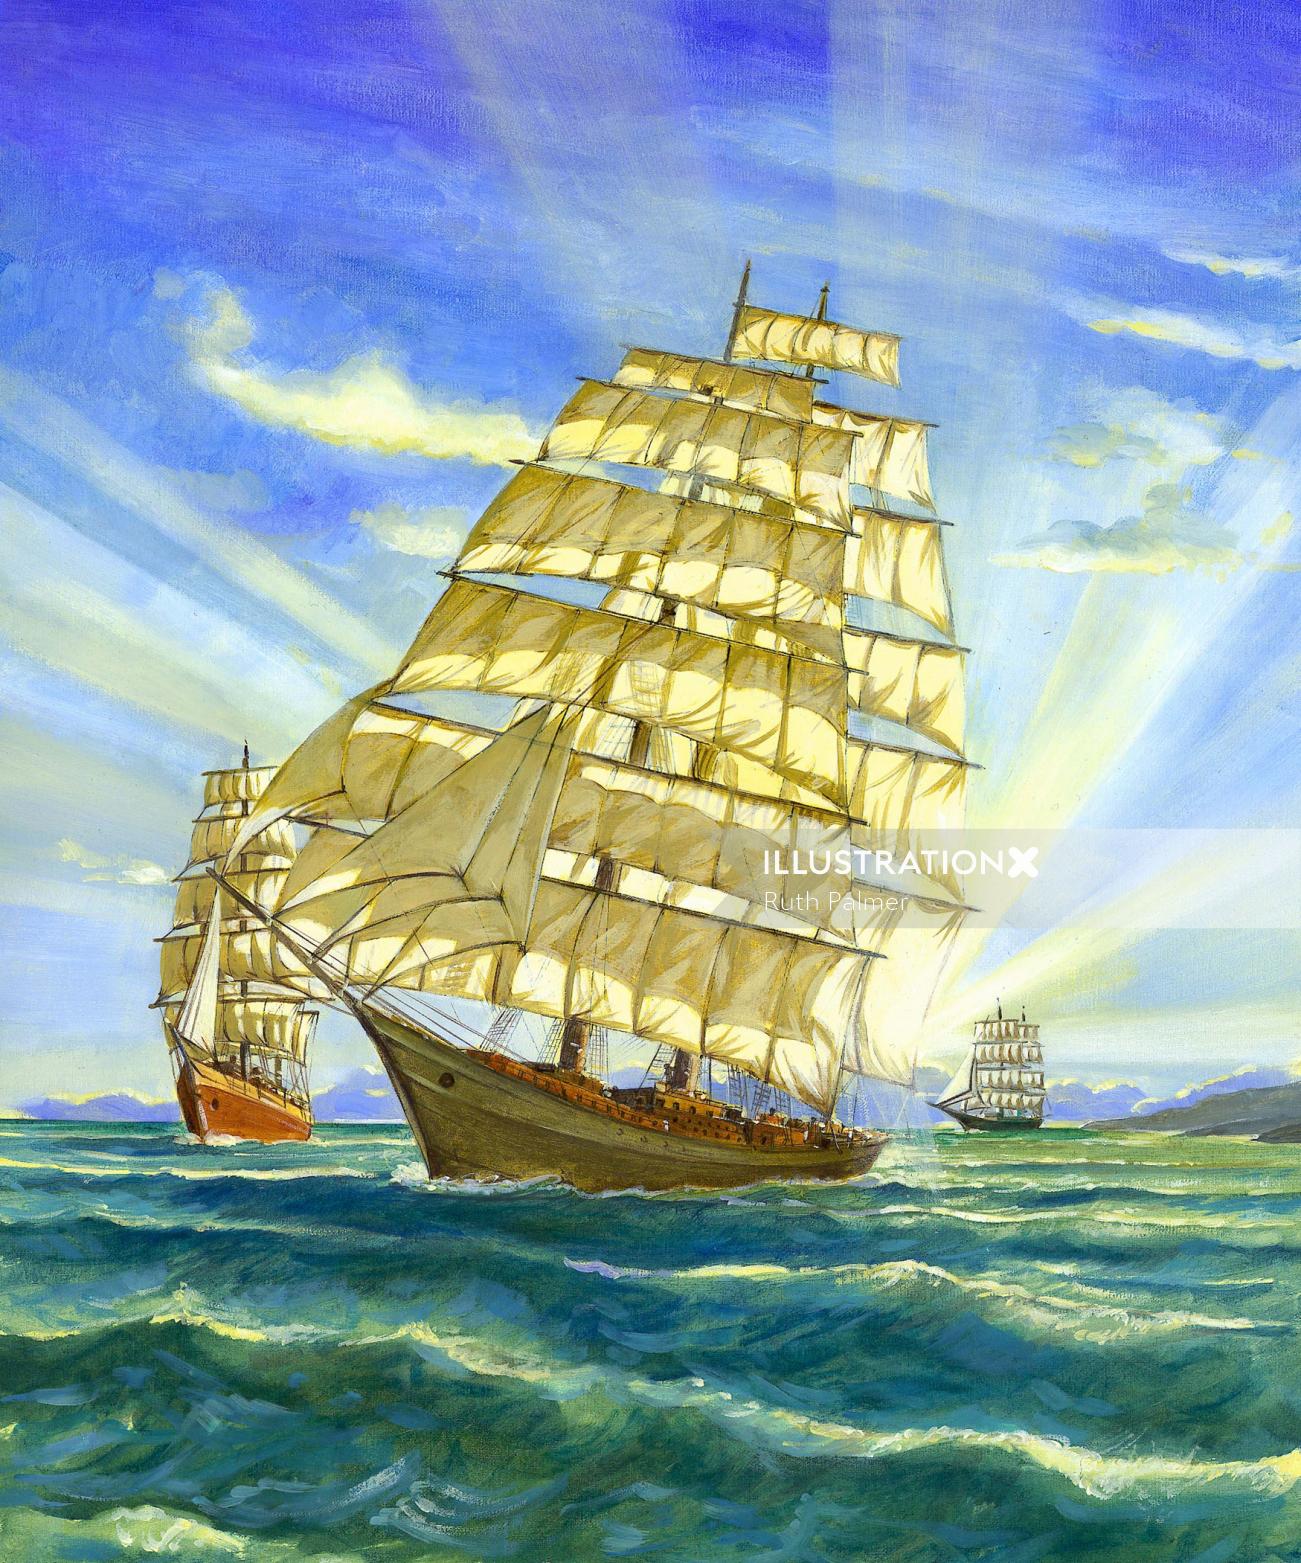 pencil artwork of old sailing ships